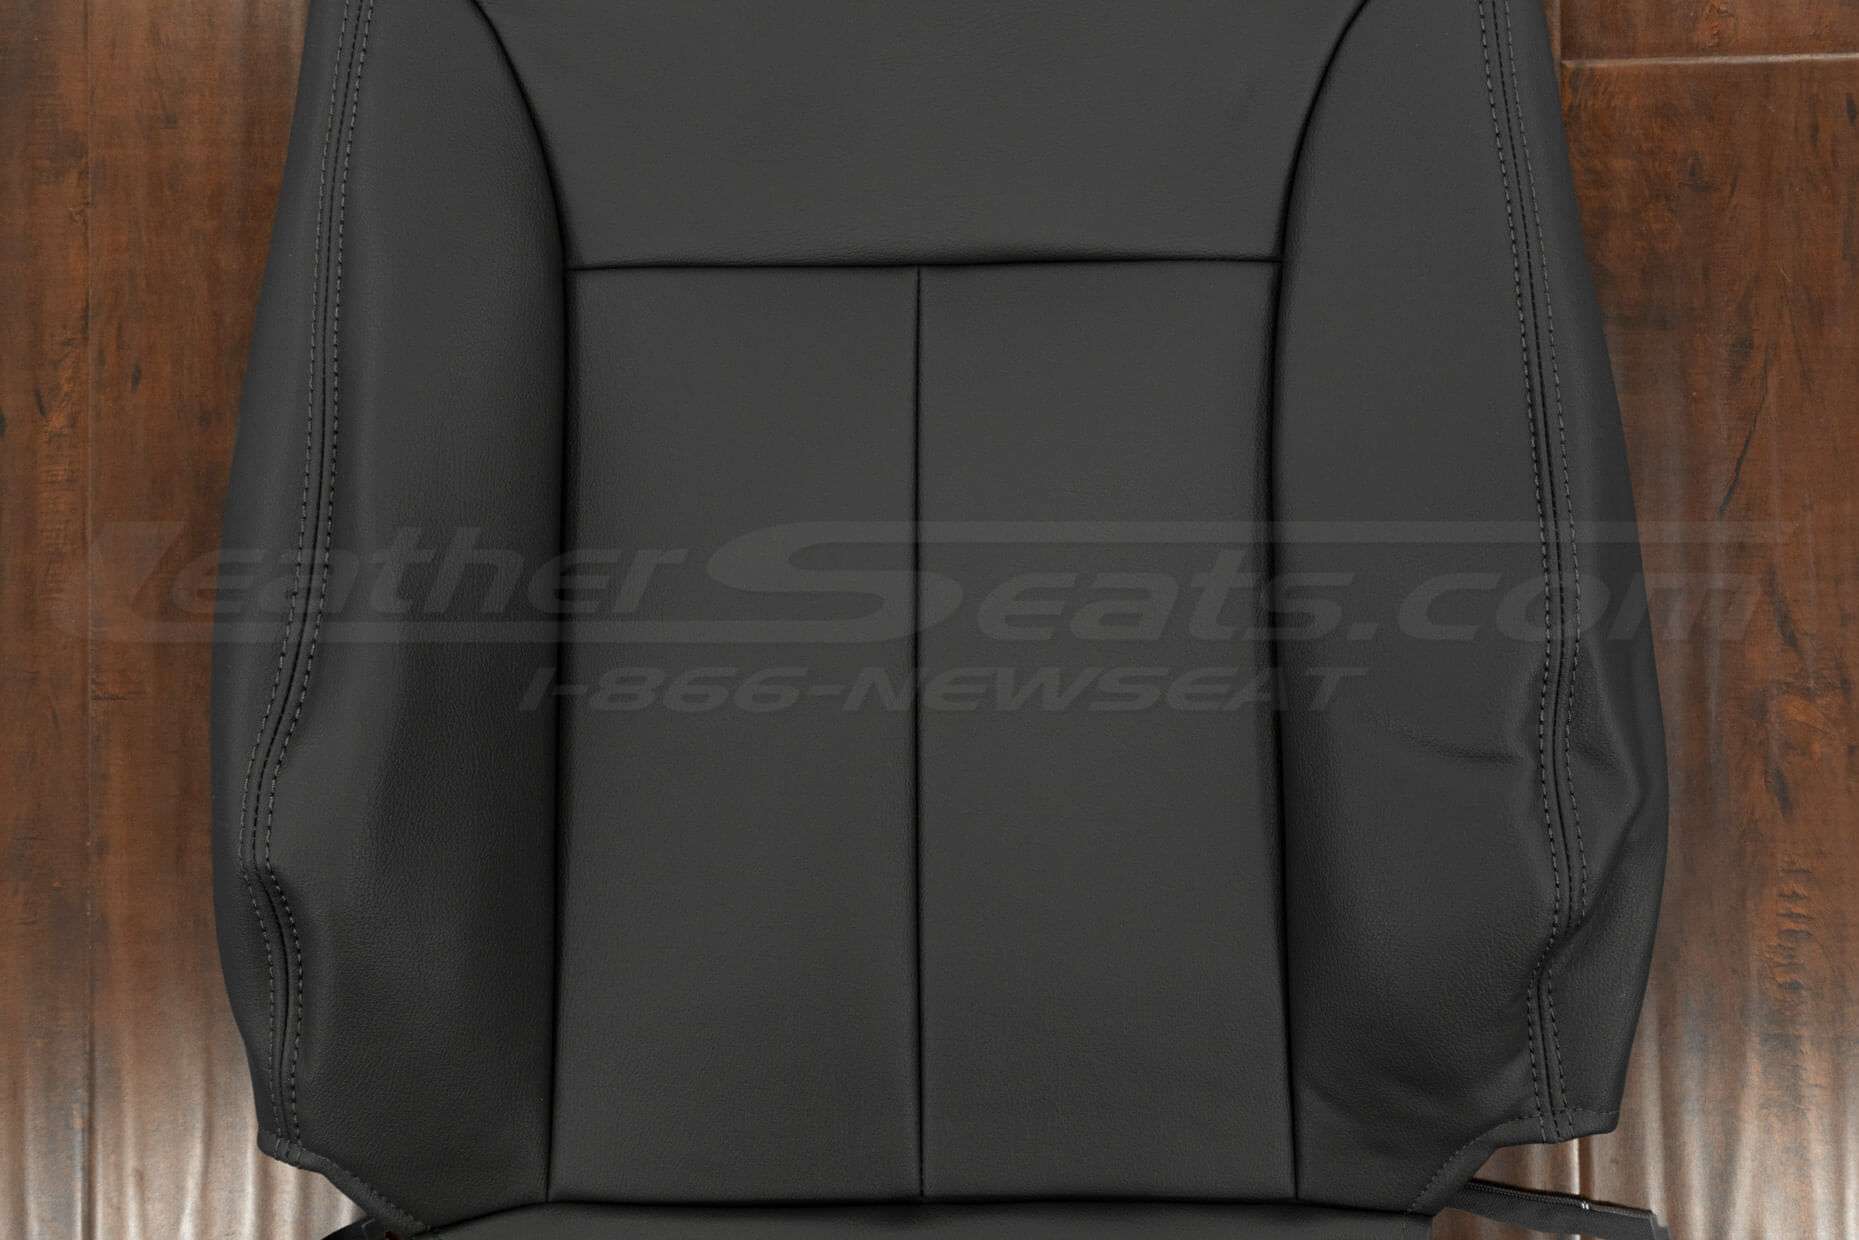 Insert section of backrest upholstery